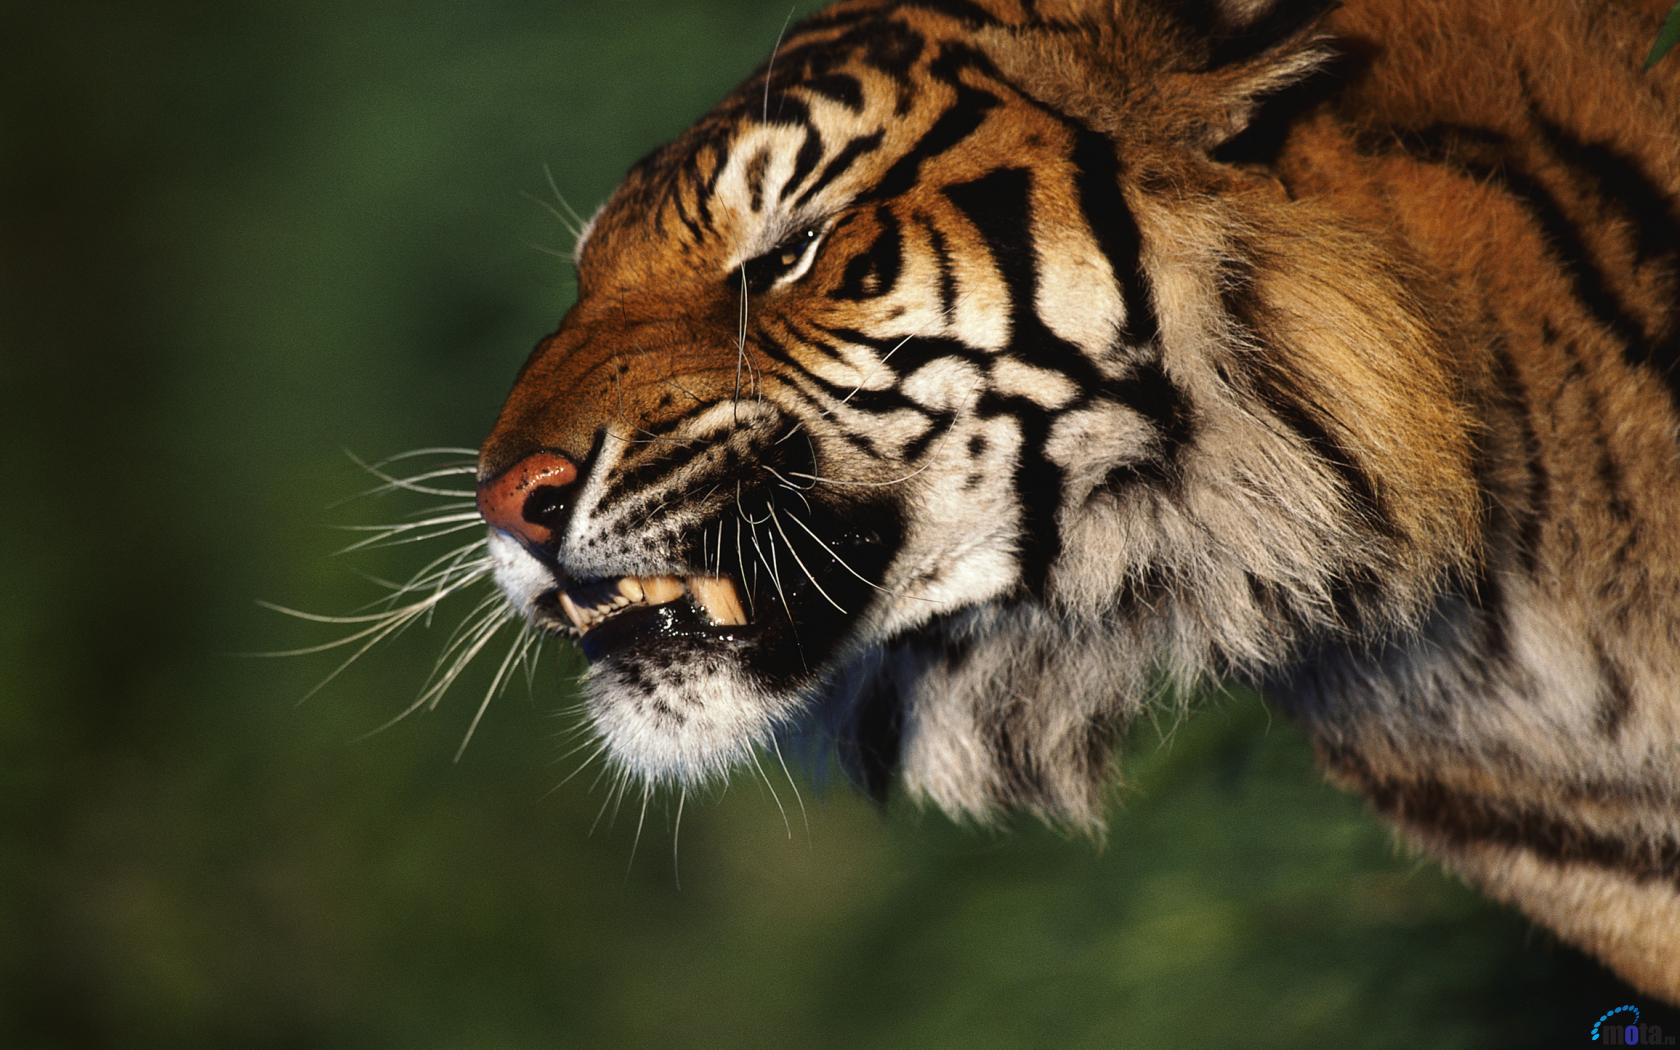 schreckliche tapeten,tiger,tierwelt,bengalischer tiger,schnurrhaare,landtier